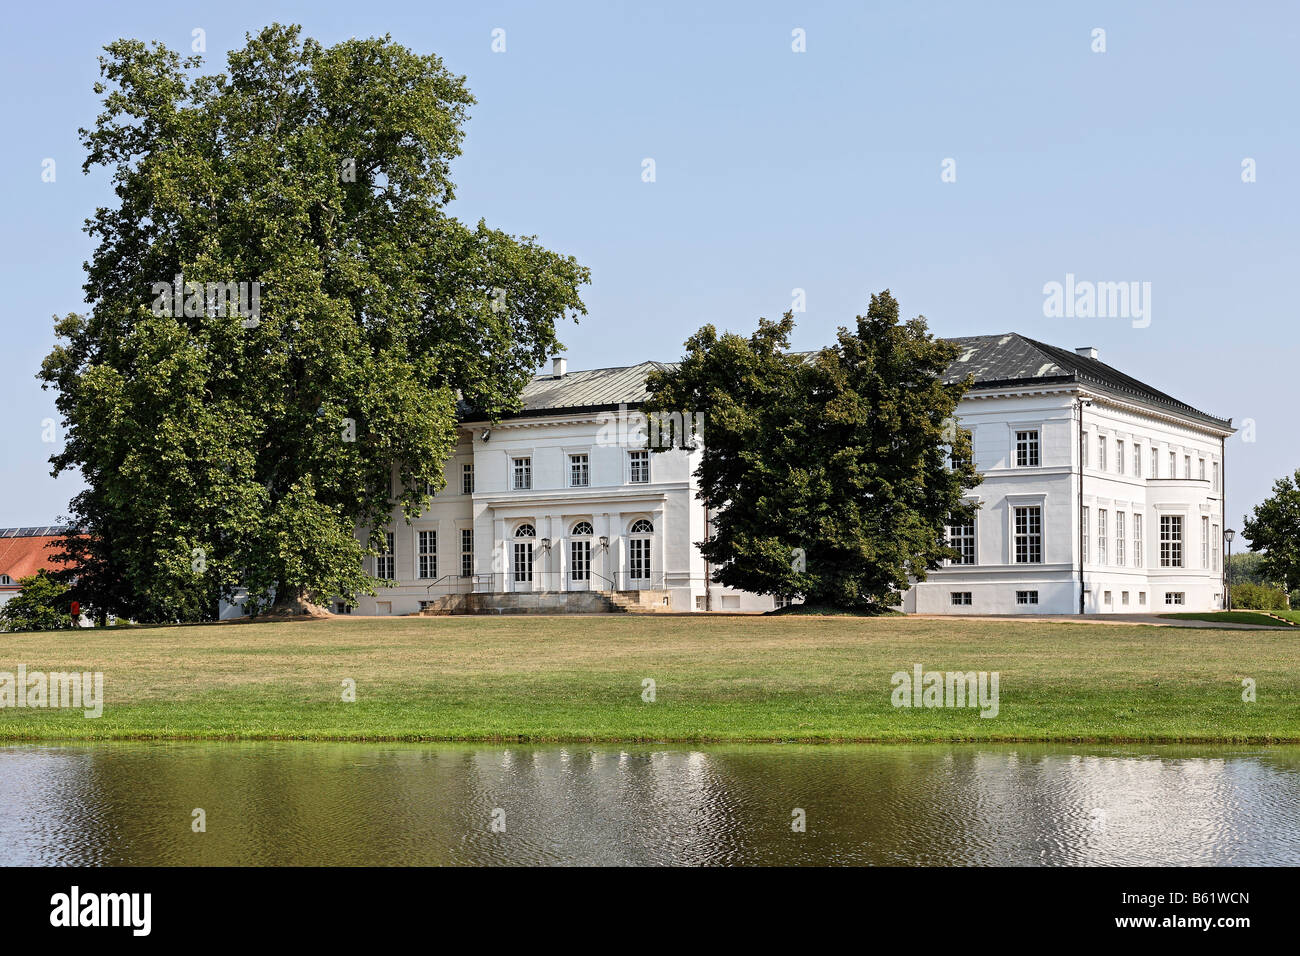 Neuhardenberg Palace, palais classique par l'architecte Schinkel, jardin, région de l'Oderbruch, Maerkisch-Oderland district, Brande Banque D'Images